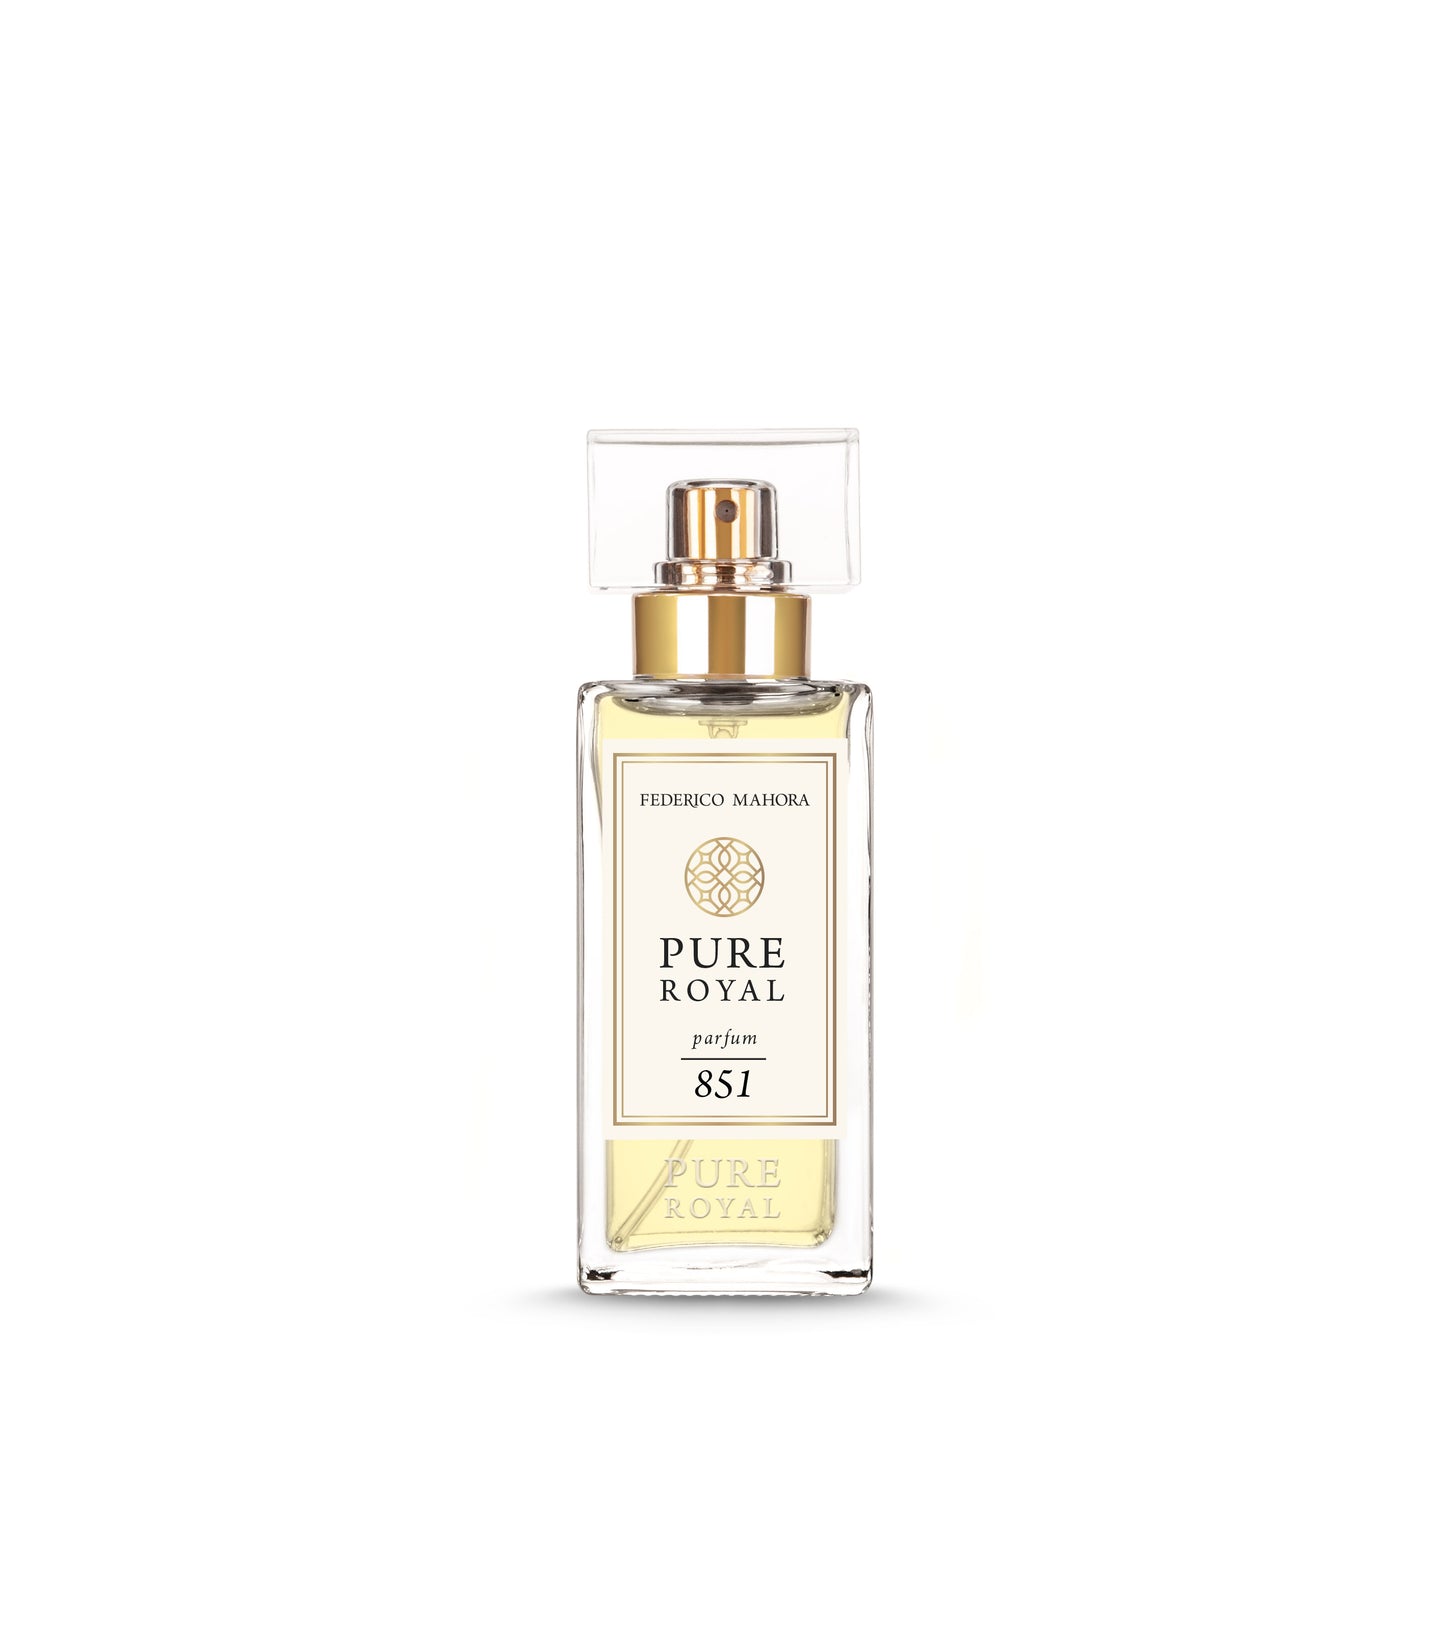 FM Pure Royal parfum 851